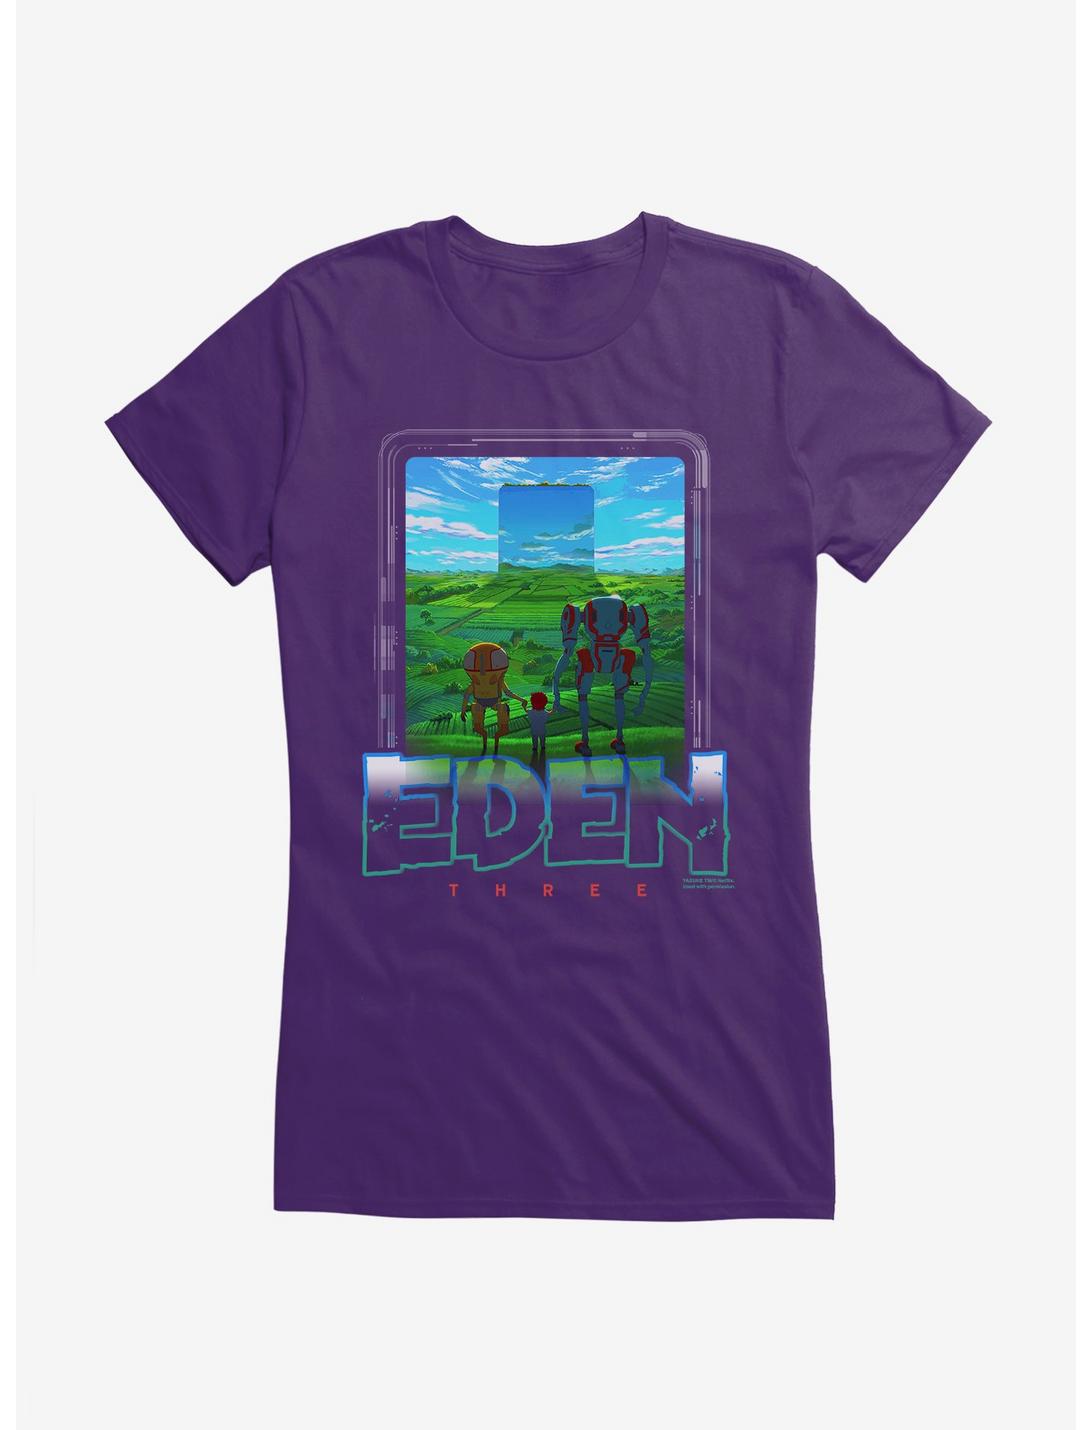 Eden Three Garden Logo Girls T-Shirt, PURPLE, hi-res